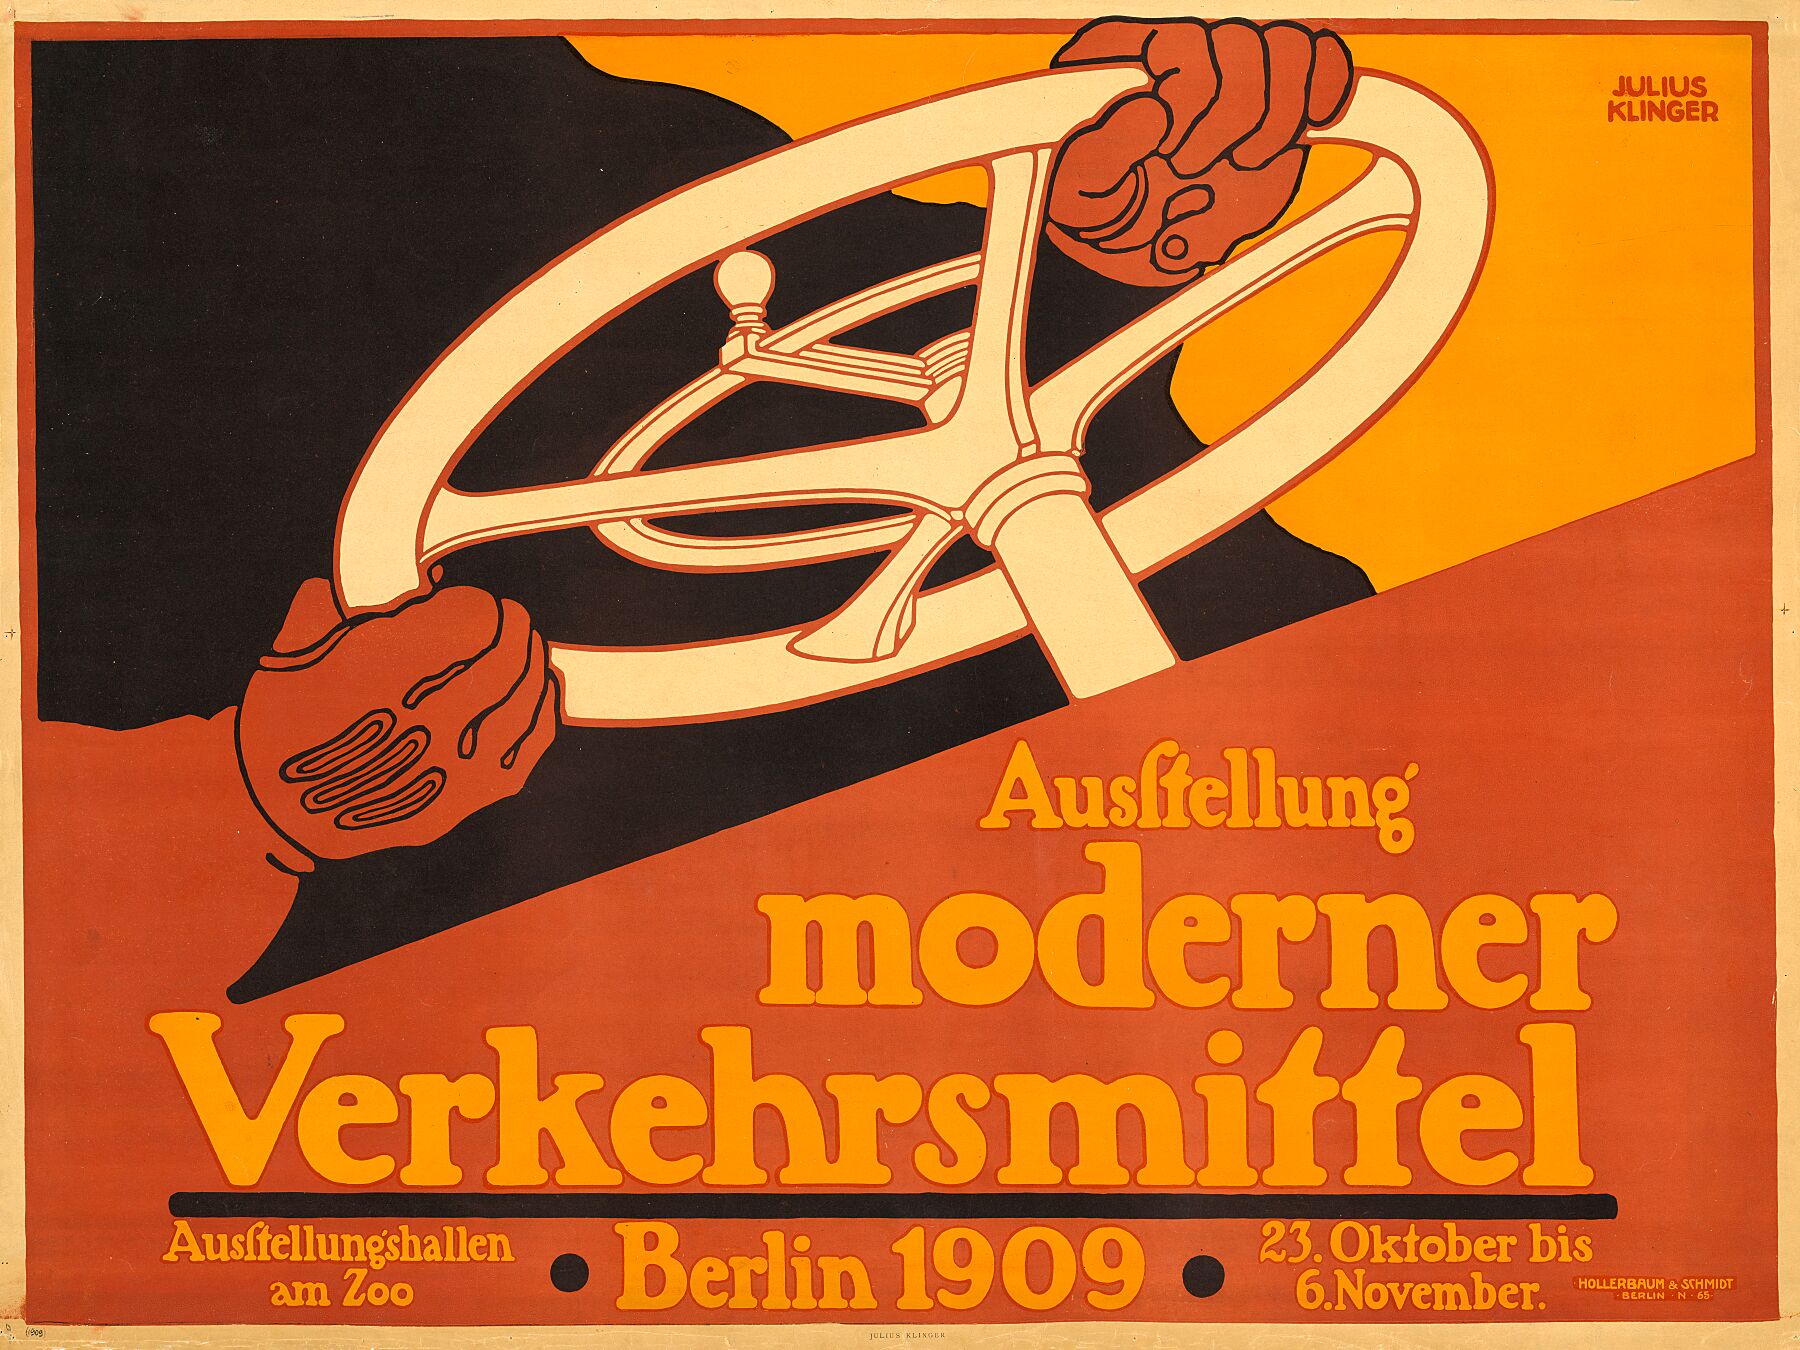 Ausstellung moderner Verkehrsmittel by Julius Klinger - 1909